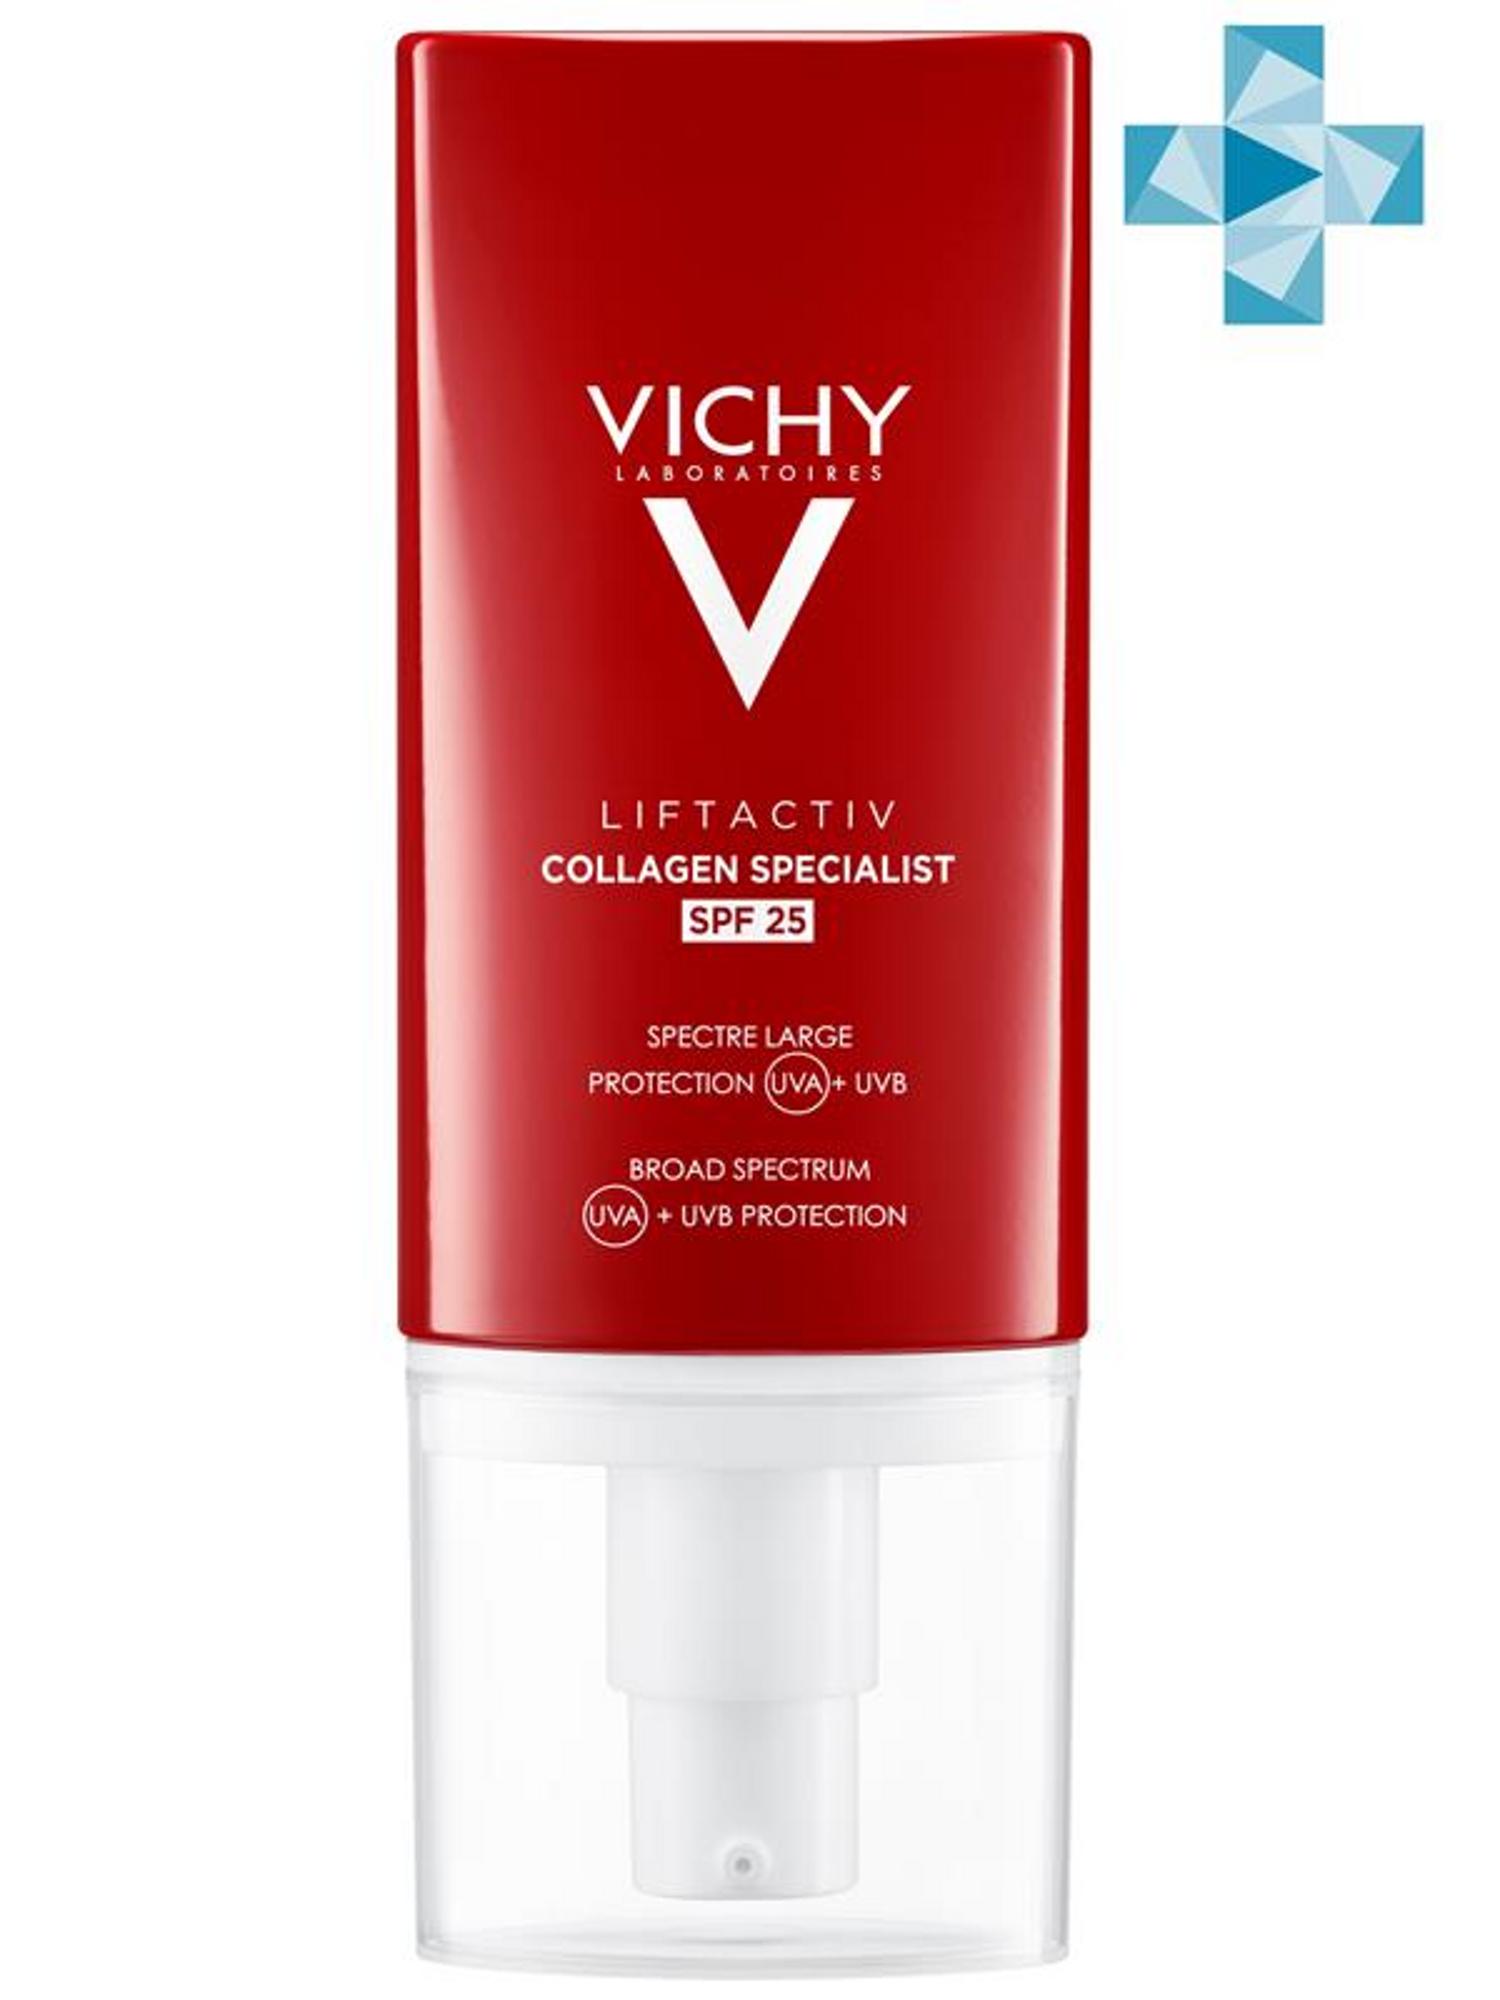 Купить Vichy Антивозрастной крем для лица Collagen Specialist c эффектом лифтинга SPF 25, 50 мл (Vichy, Liftactiv), Франция